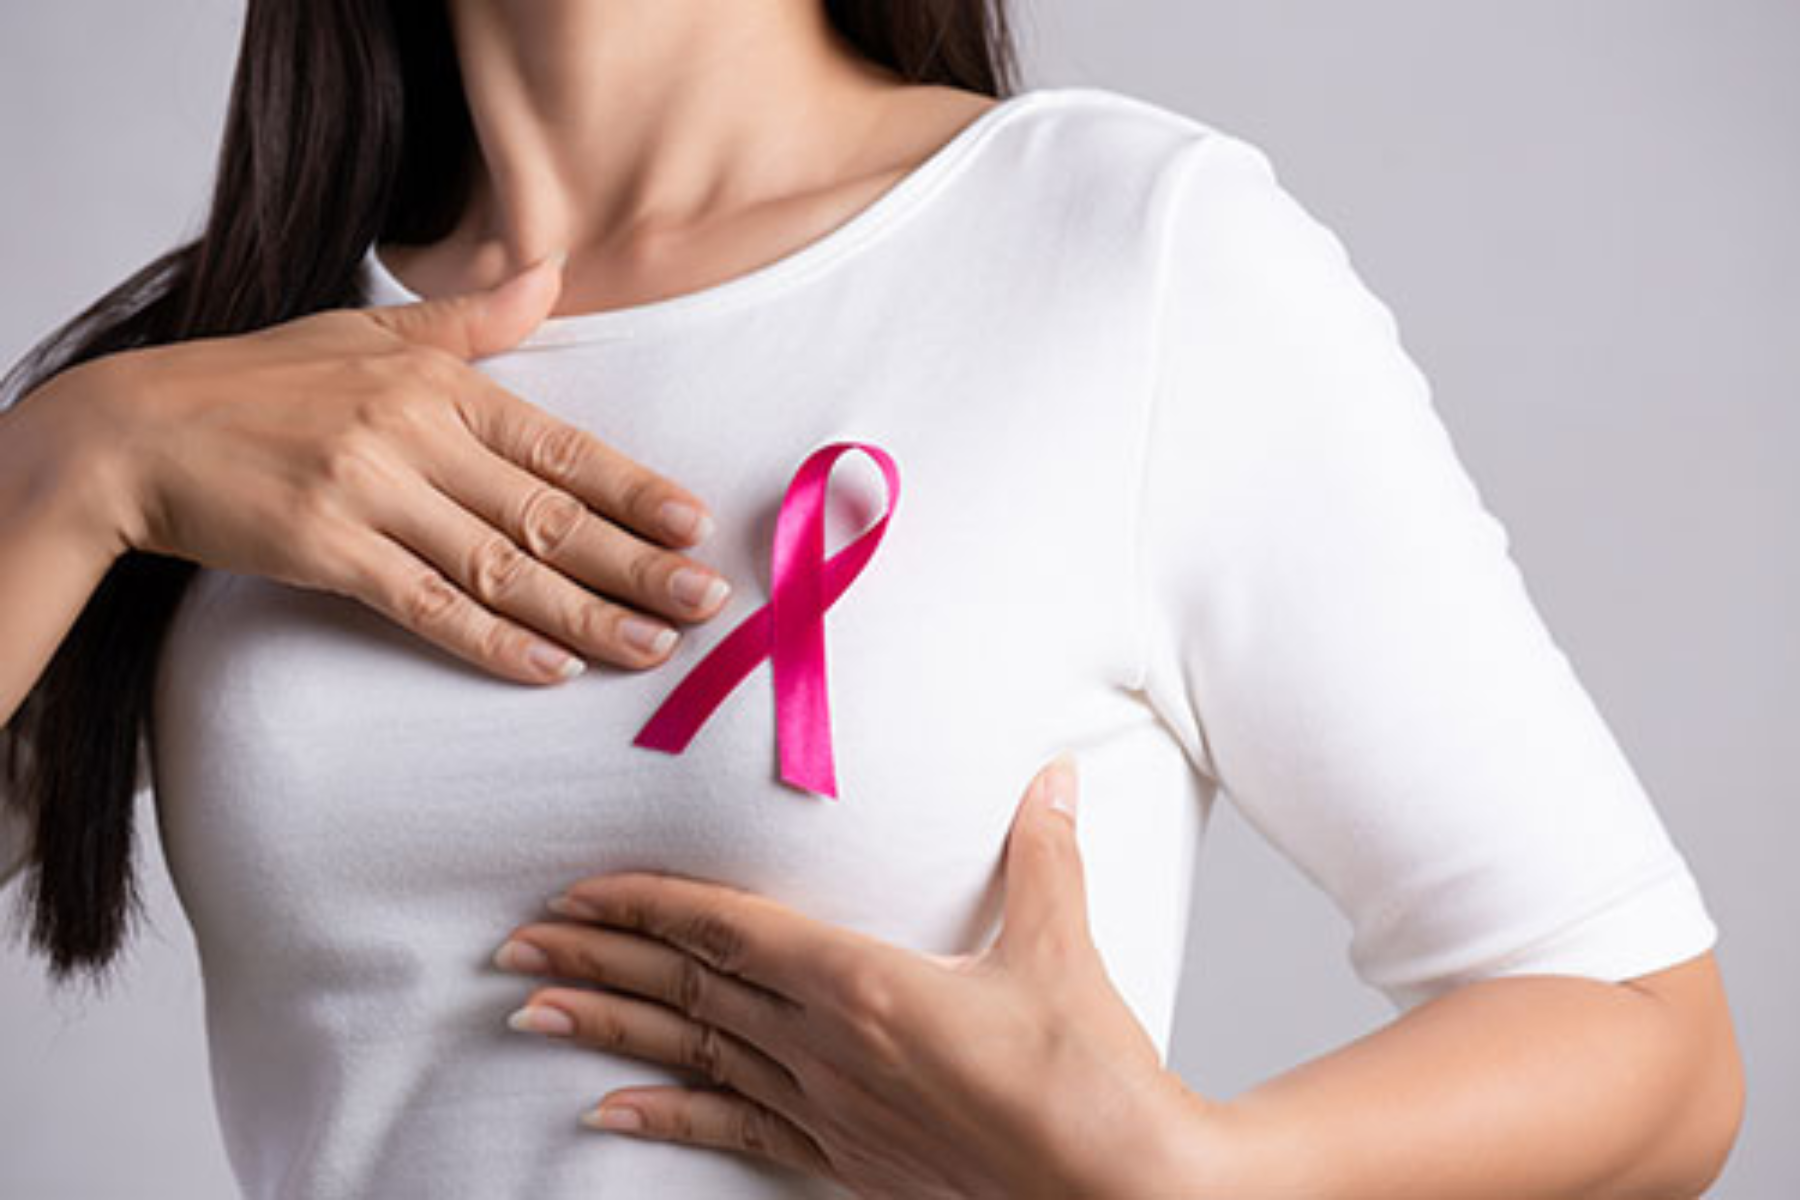 Μαστεκτομή: Γιατί οι γυναίκες δεν πληροφορούνται για την αποκατάσταση του μαστού;